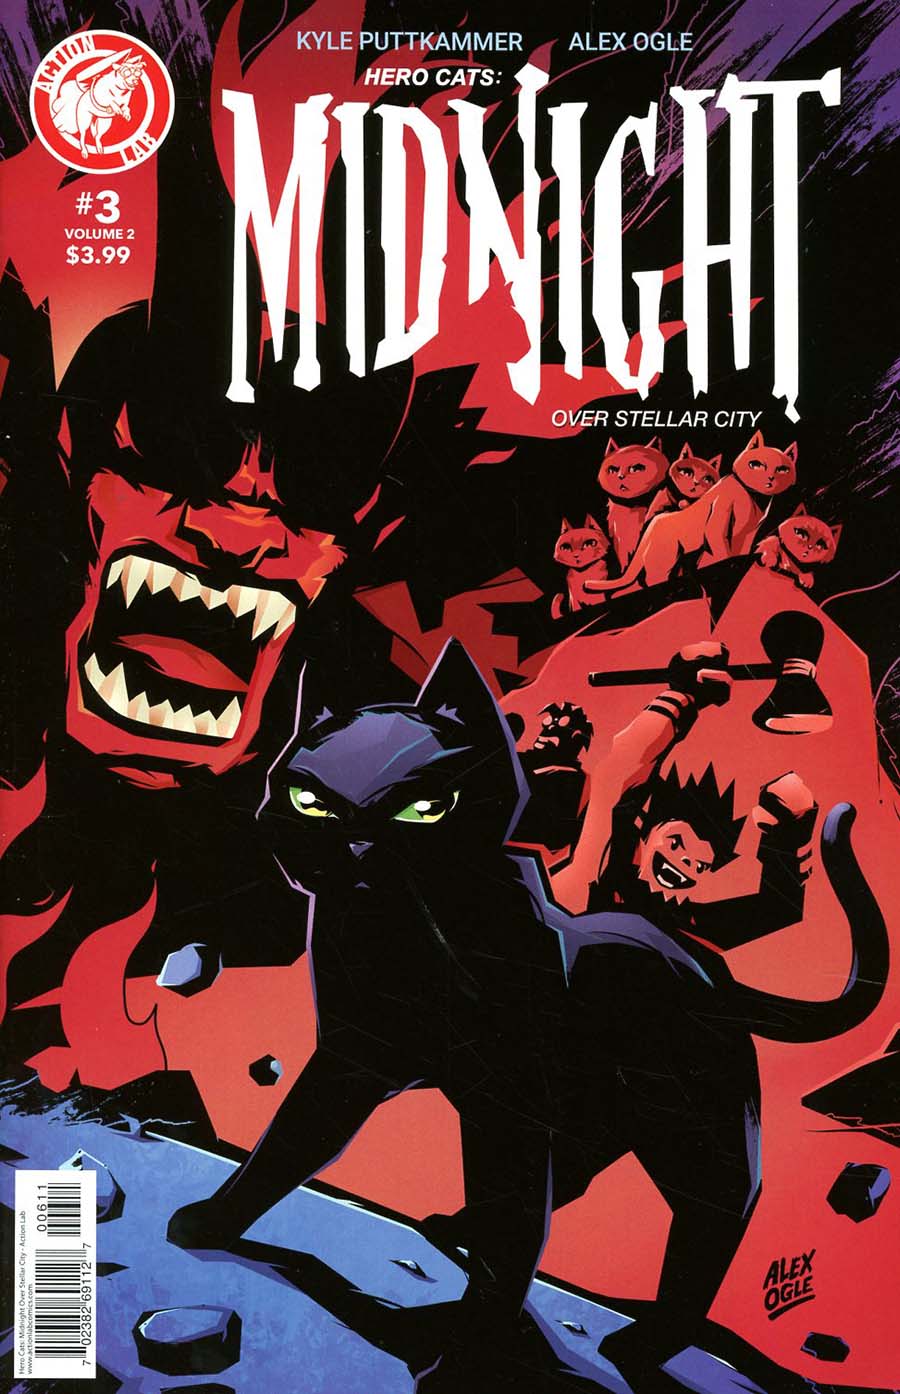 Hero Cats Midnight Over Stellar City Vol 2 #3